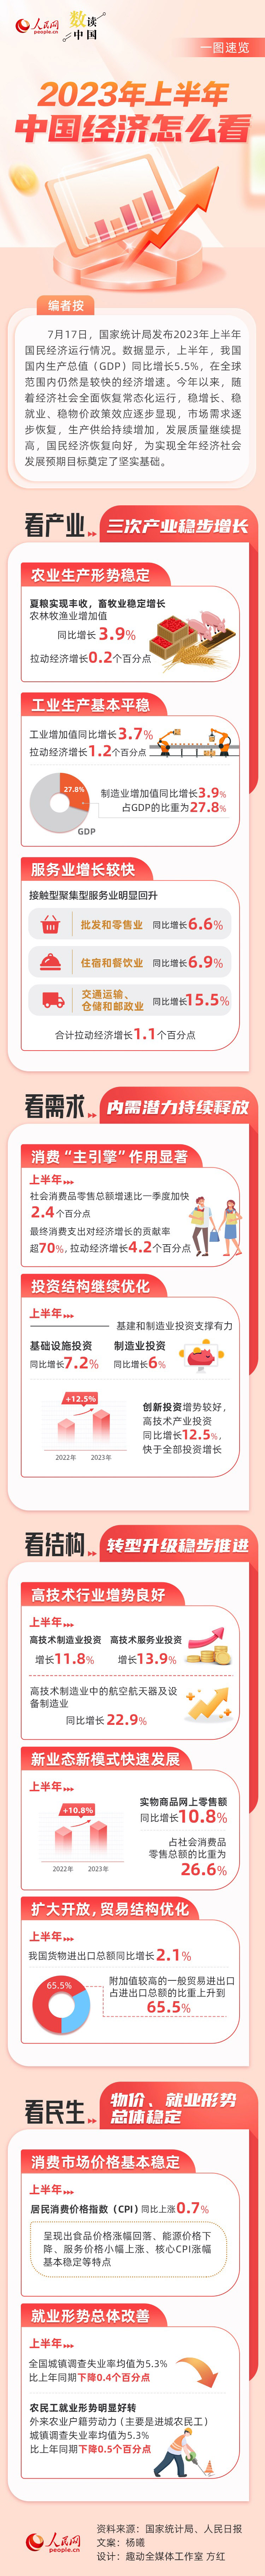 数读中国 | 2023年上半年中国经济怎么看？一图速览